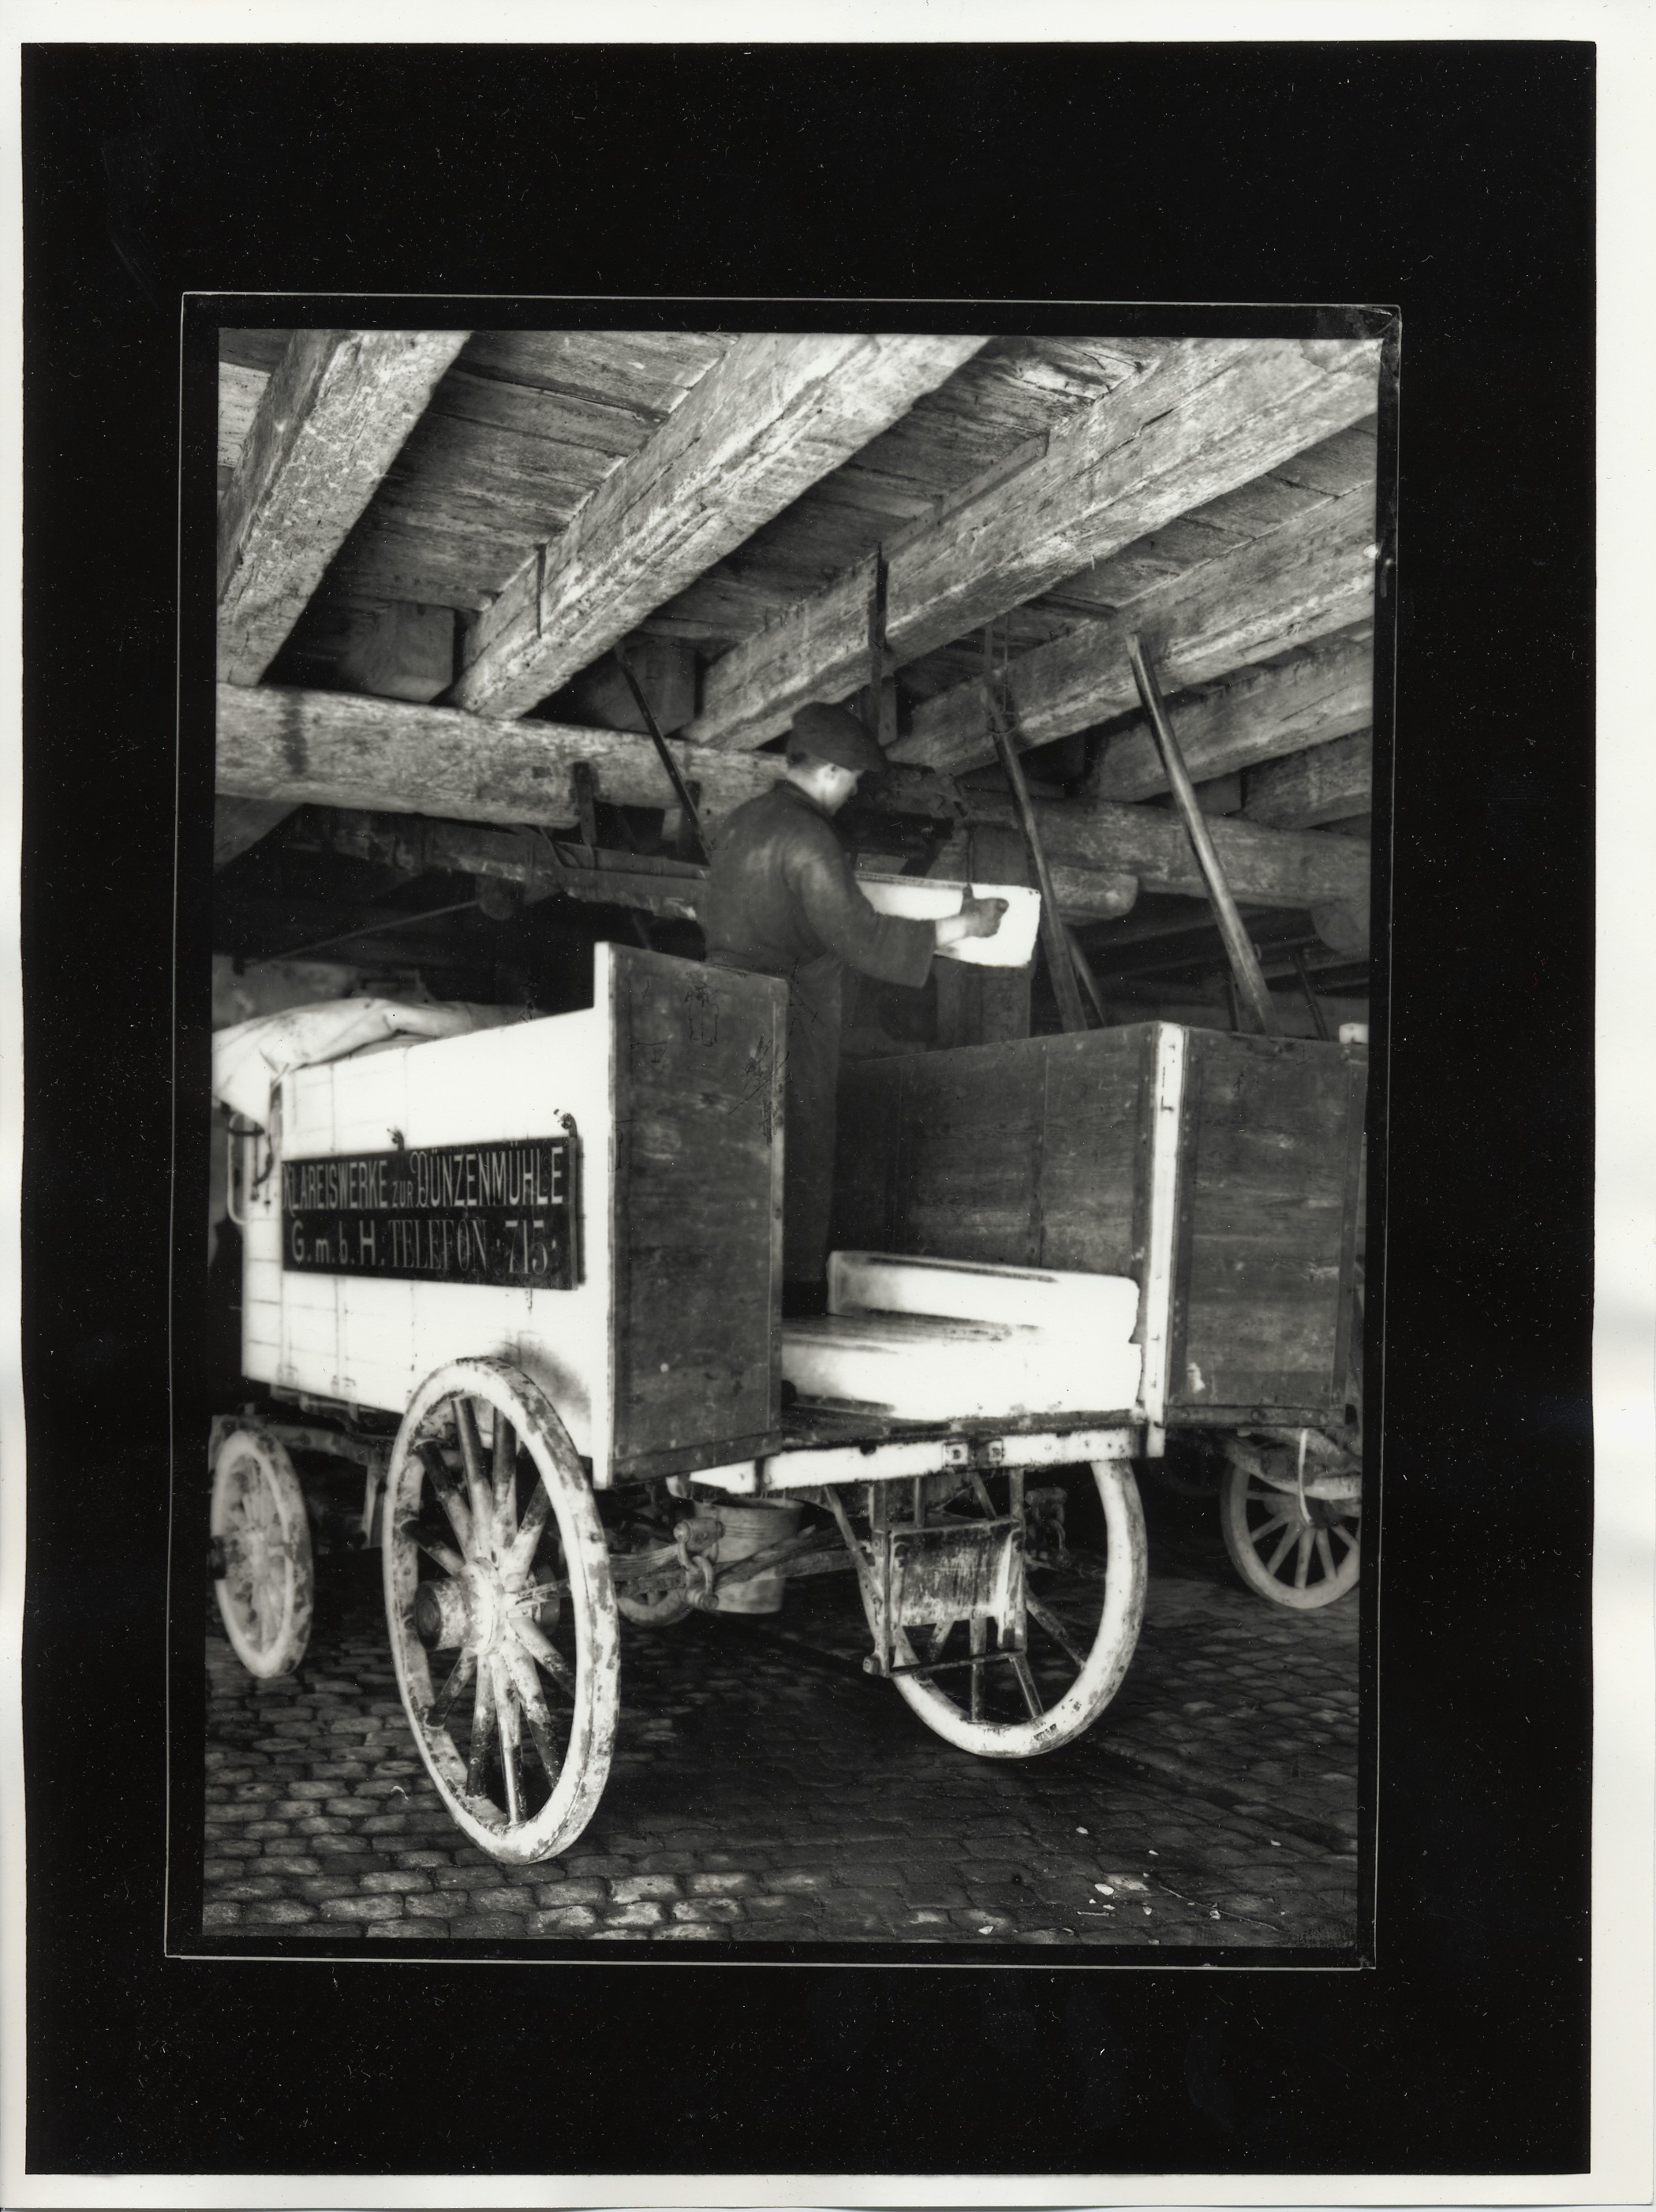 Chargement d’un chariot servant au transport des pains de glace. Ces derniers descendent du 1er étage par une glissière derrière l’ouvrier.